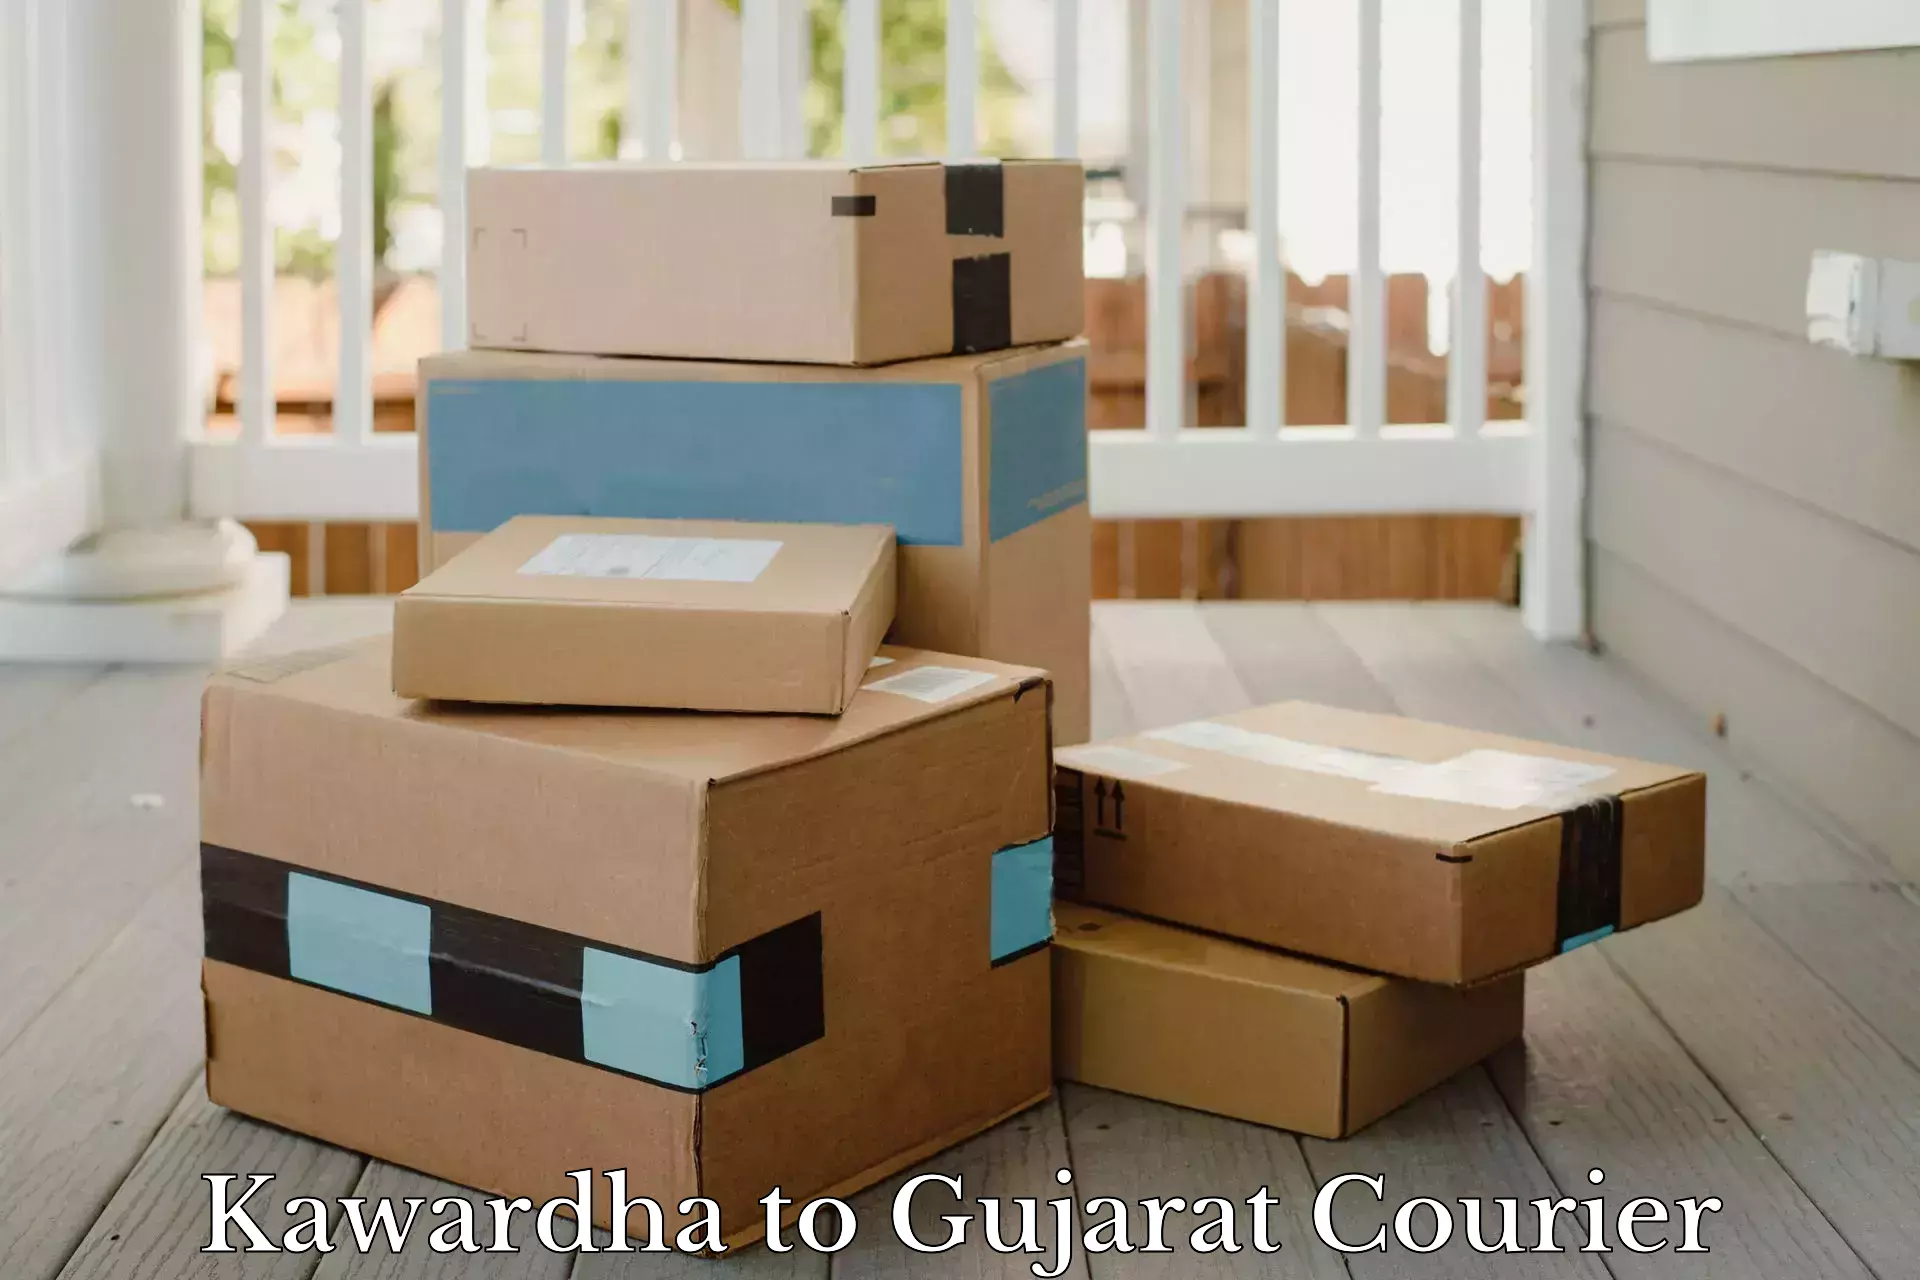 Efficient cargo handling Kawardha to Kadana